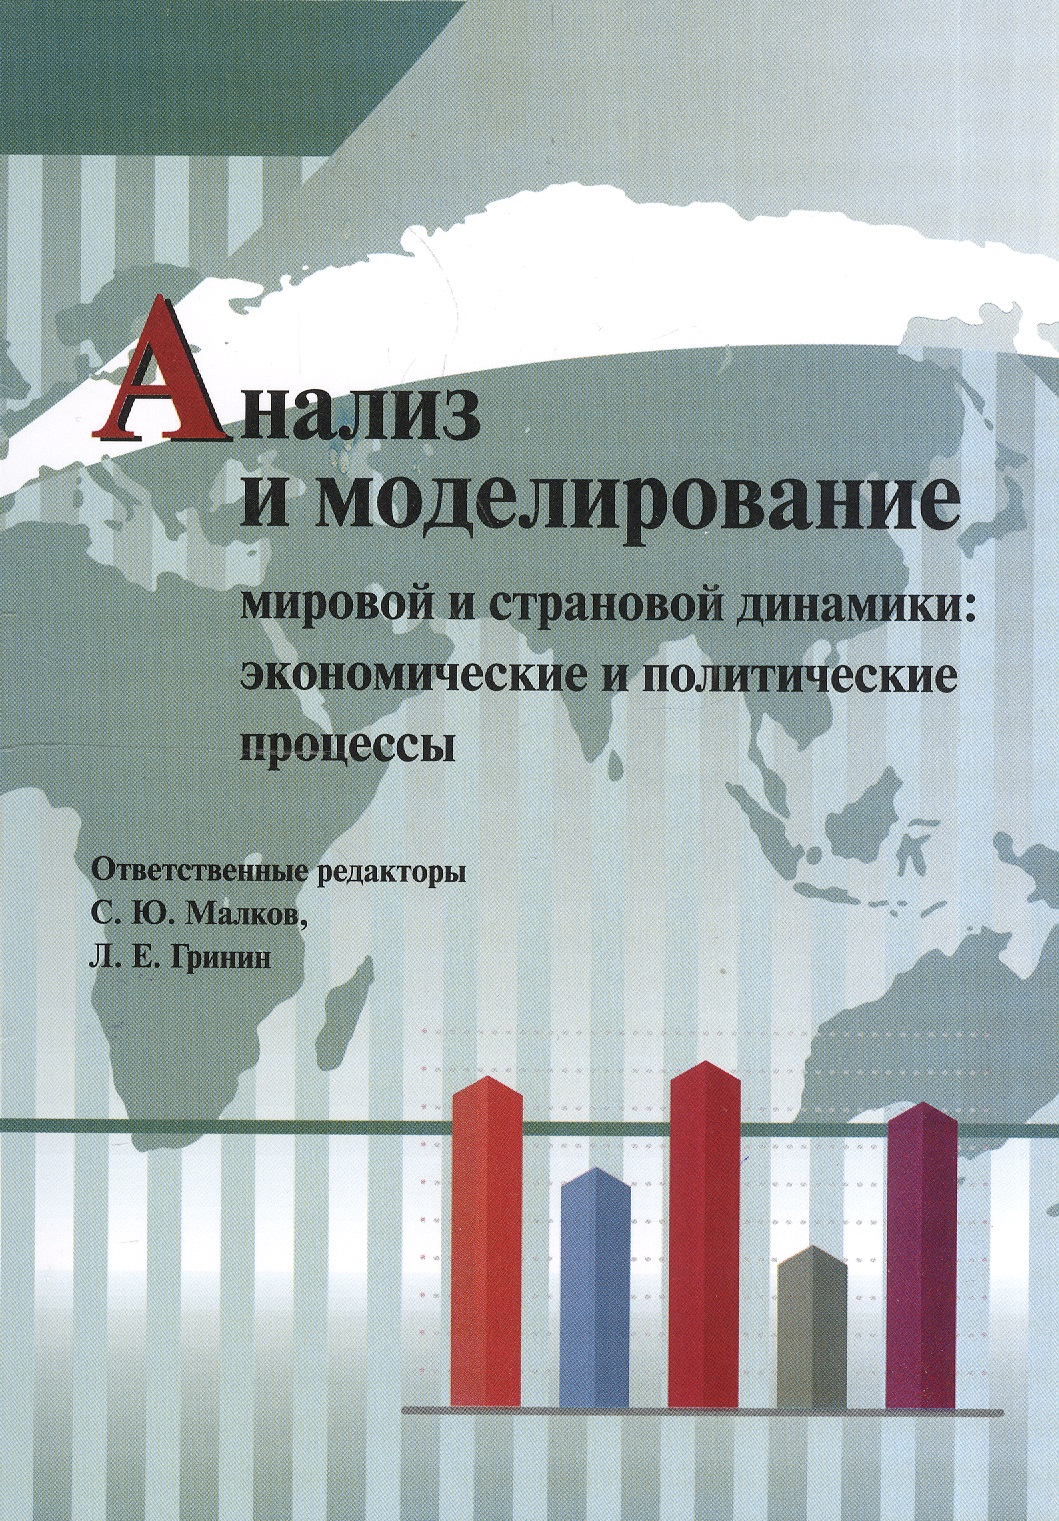 Гринин Леонид Ефимович - Анализ и моделирование мировой и страновой динамики: экономические и политические процессы